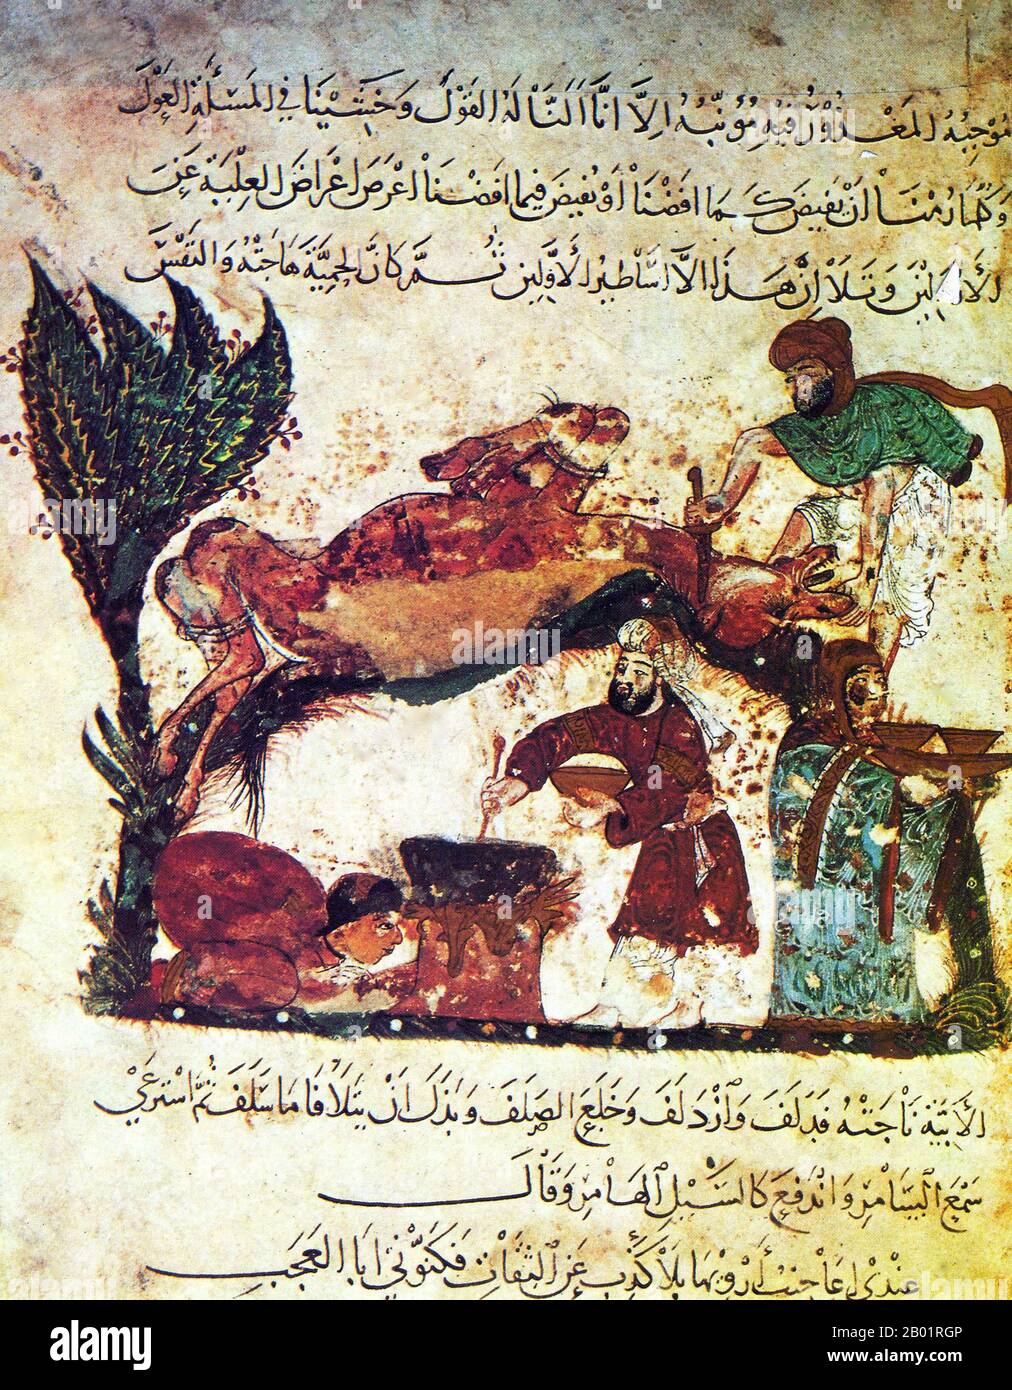 Iraq: Macellazione rituale di un cammello e cottura di un pasto. Dipinto in miniatura di Yahya ibn Mahmud al-Wasiti, 1237. Yahyâ ibn Mahmûd al-Wâsitî è stato un artista arabo islamico del XIII secolo. Al-Wasiti è nato a Wasit, nel sud dell'Iraq. Era noto per le sue illustrazioni del Maqam di al-Hariri. I Maqāma (letteralmente "assemblee") sono un genere letterario arabo (originariamente) di prosa rimata con intervalli di poesia in cui la stravaganza retorica è evidente. Si dice che l'autore del X secolo Badī' al-Zaman al-Hamadhāni abbia inventato la forma, che fu estesa da al-Hariri di Bassora nel secolo successivo. Foto Stock